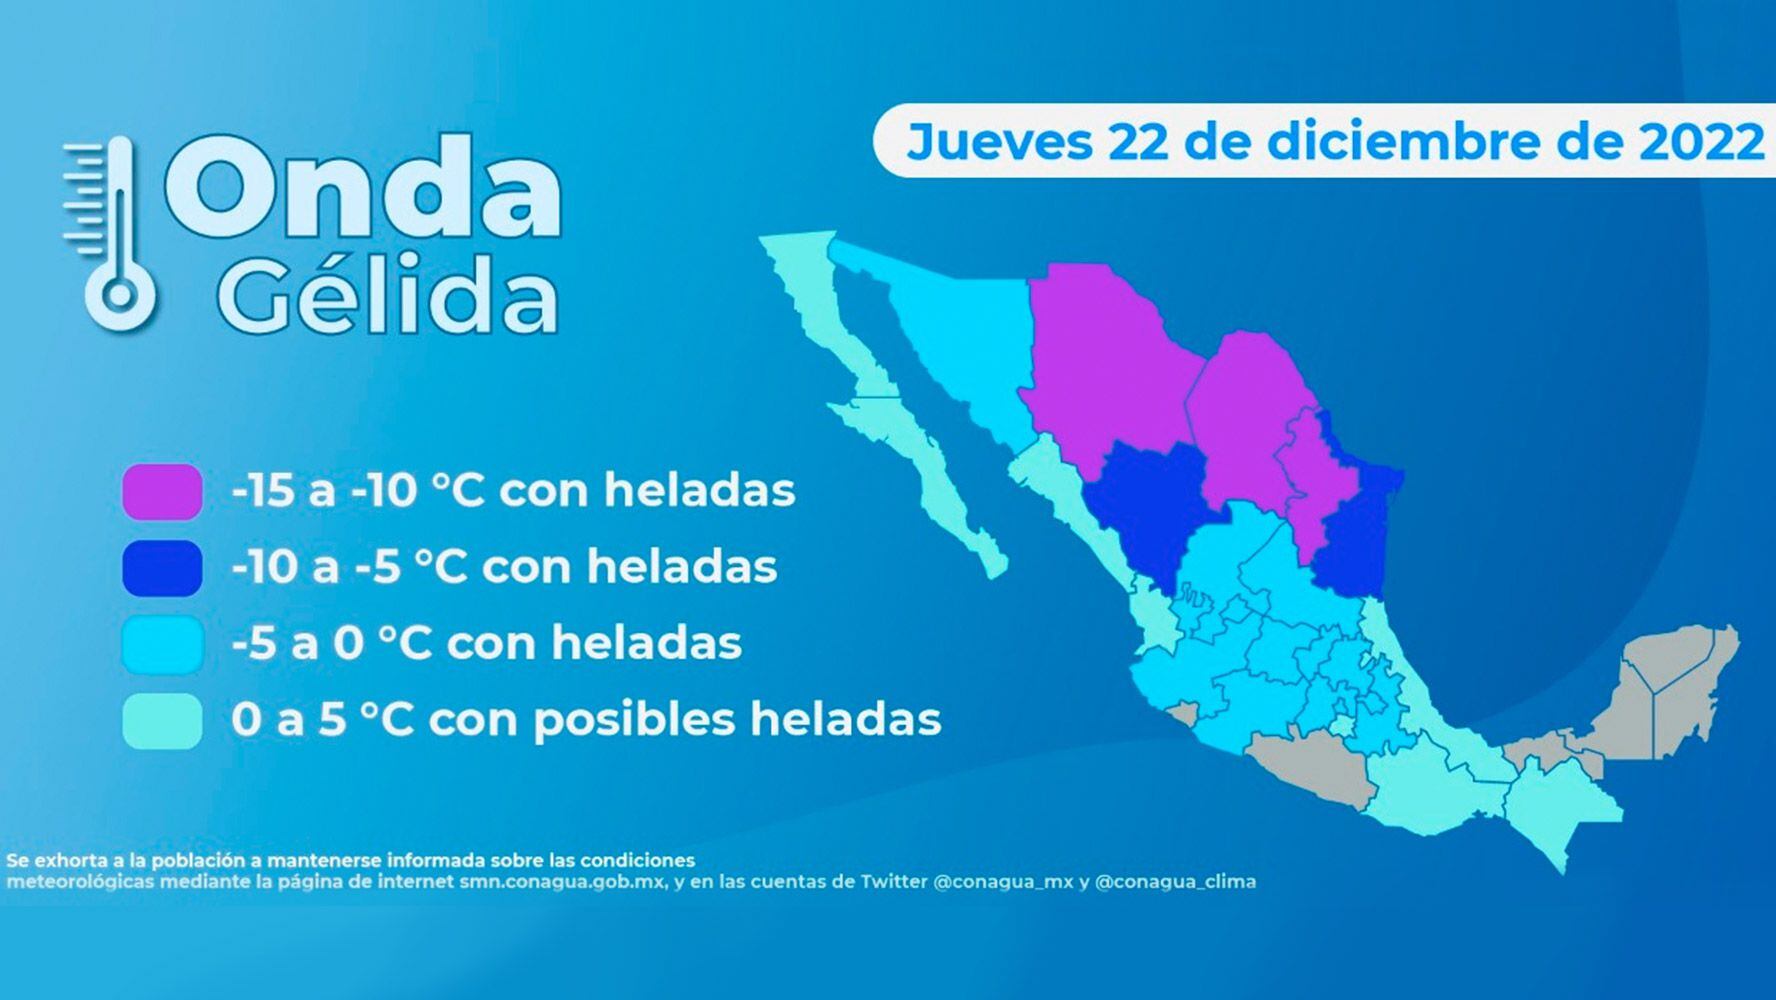 La onda gélida afectará principalmente a los estados del norte de México.